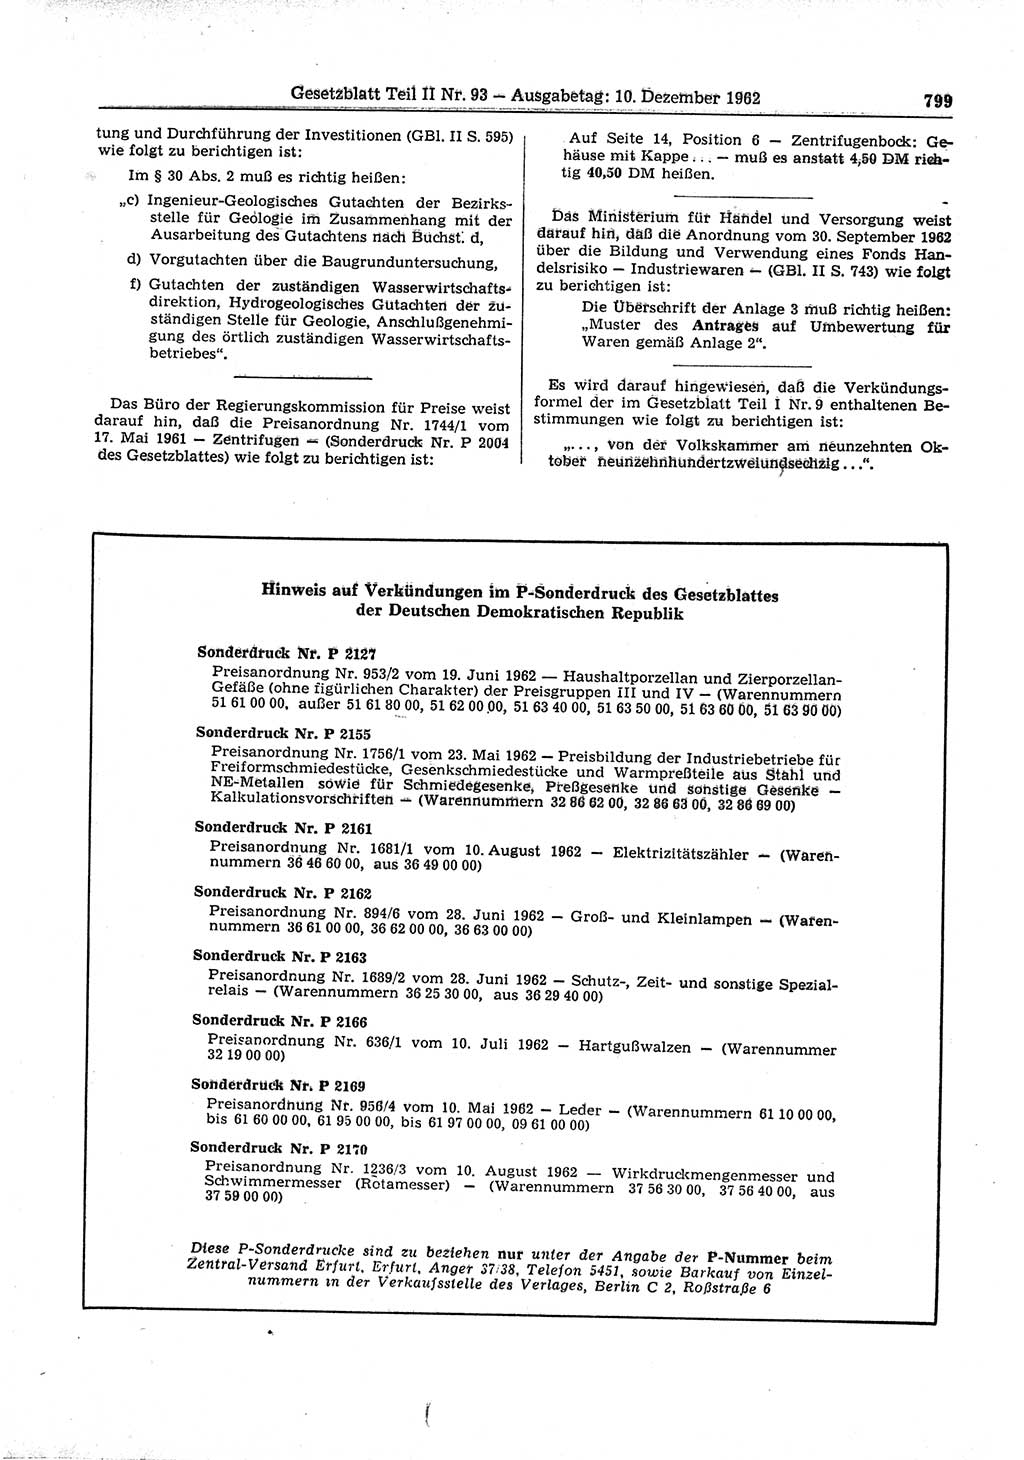 Gesetzblatt (GBl.) der Deutschen Demokratischen Republik (DDR) Teil ⅠⅠ 1962, Seite 799 (GBl. DDR ⅠⅠ 1962, S. 799)